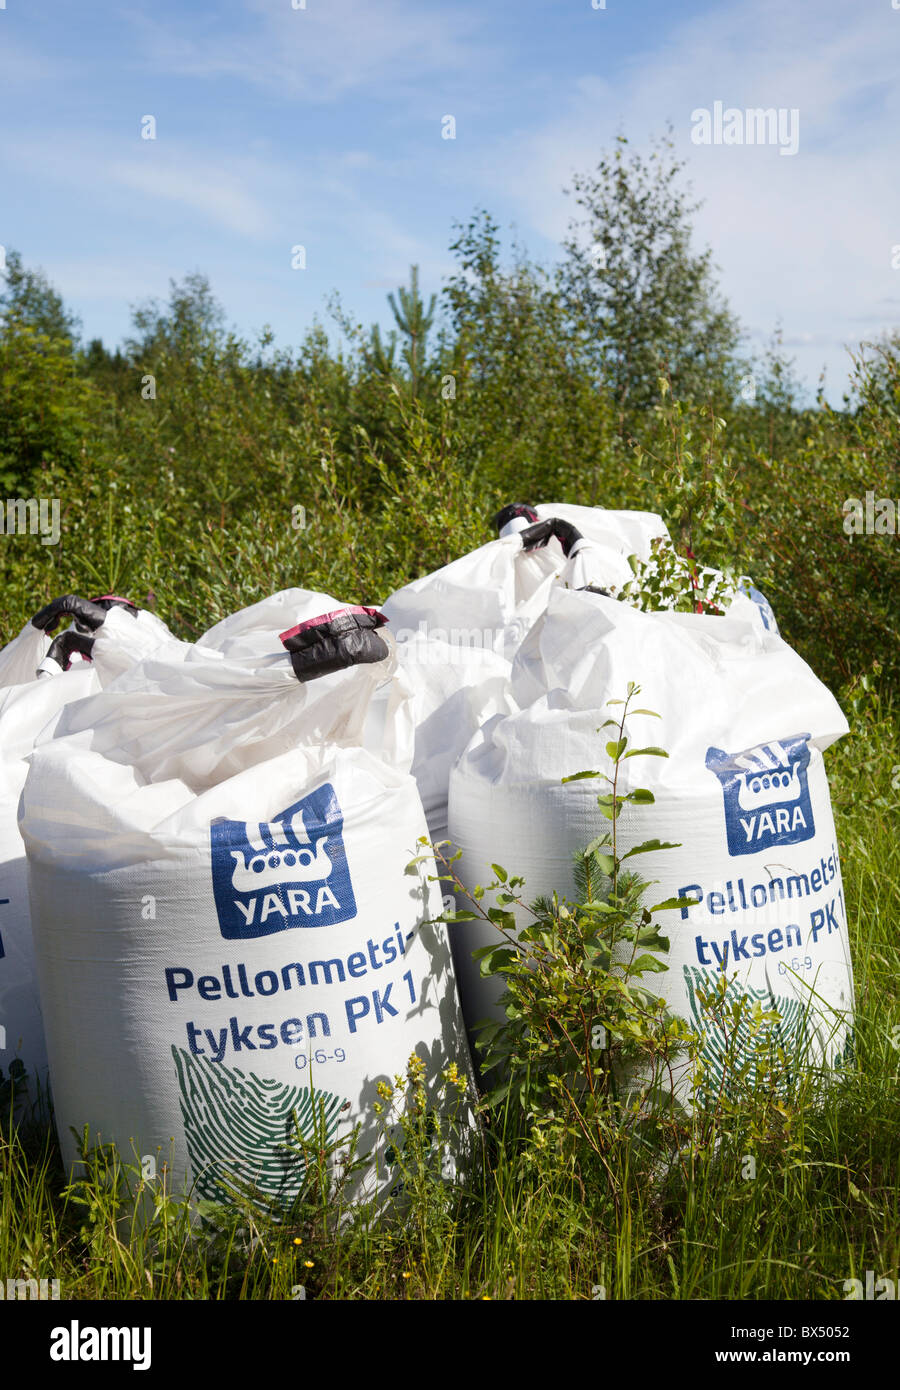 Inventario de sacos de fertilizantes forestales en espera de distribución , Finlandia Foto de stock